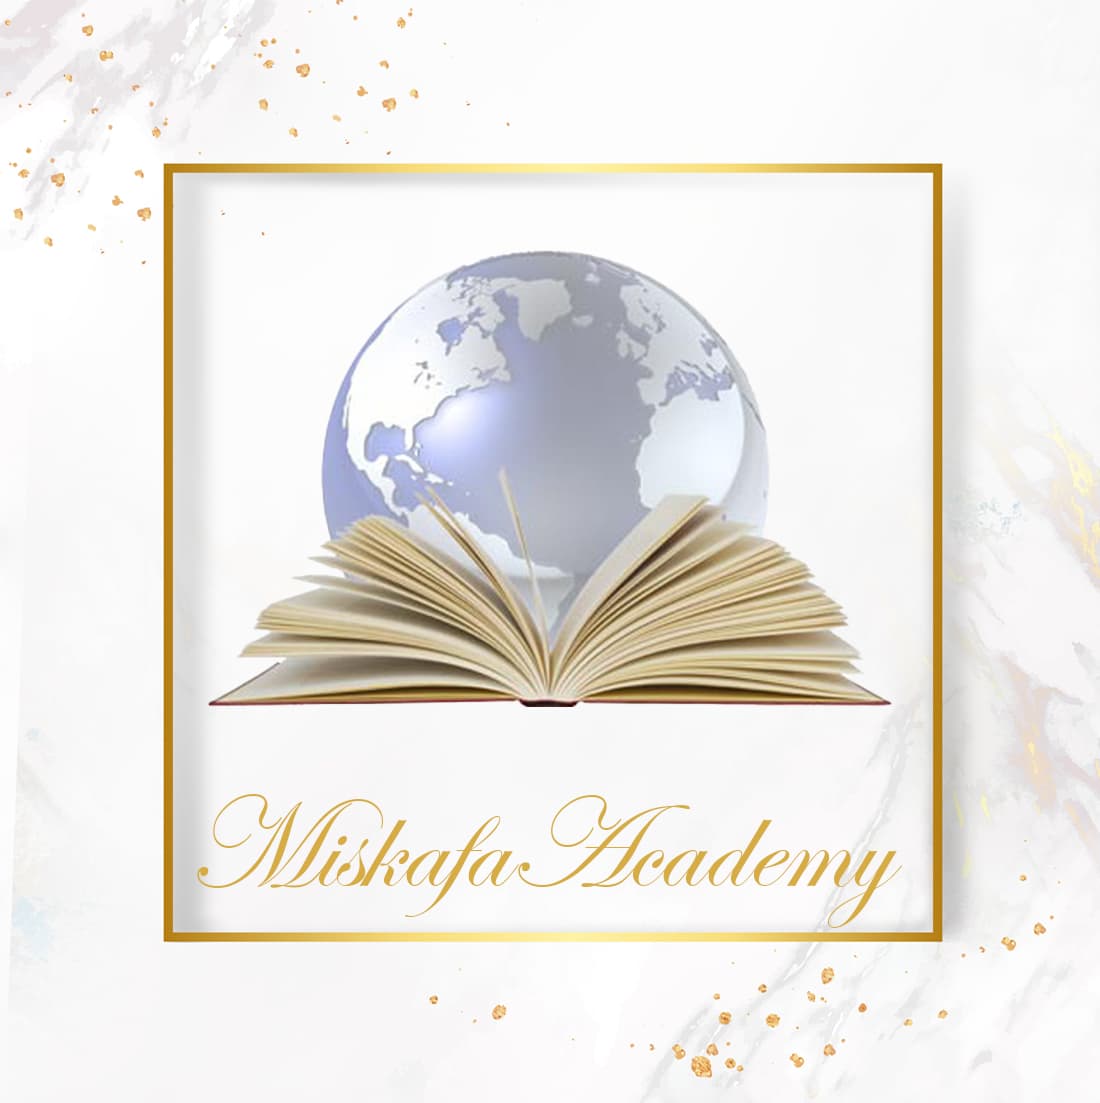 Miskafa Academy